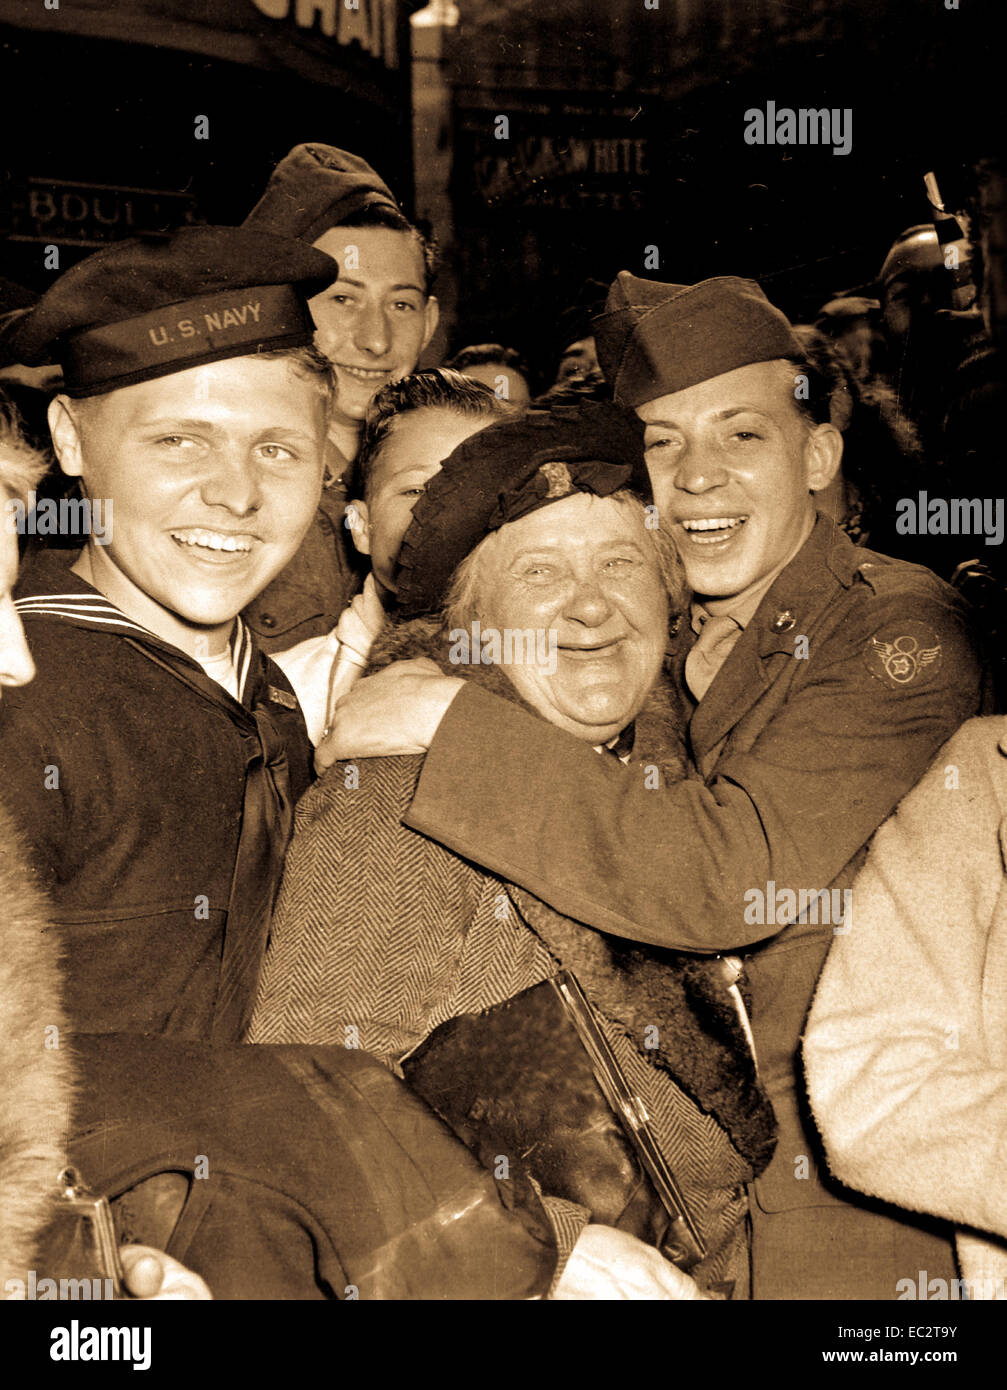 Jubilosos soldado americano abrazos maternal mujer inglesa y victoria sonríe la luz los rostros de los hombres de servicio feliz y civiles en Piccadilly Circus, Londres, celebrando la capitulación incondicional de Alemania. Inglaterra, 7 de mayo de 1945. Pfc. Melvin Weiss. (Ejército) Foto de stock